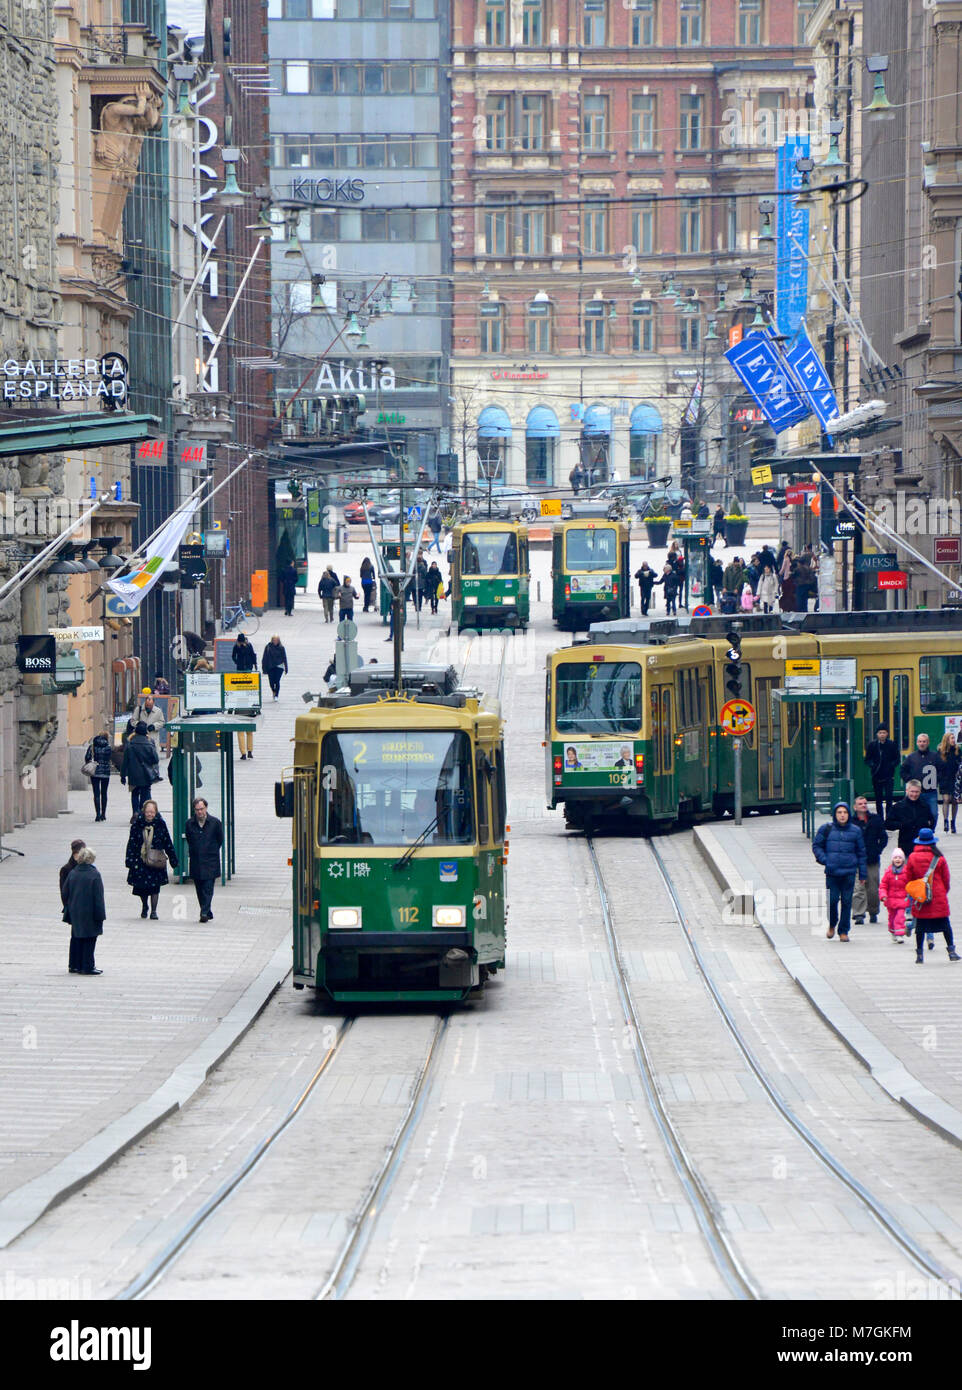 Trams in Helsinki, Finland Stock Photo - Alamy